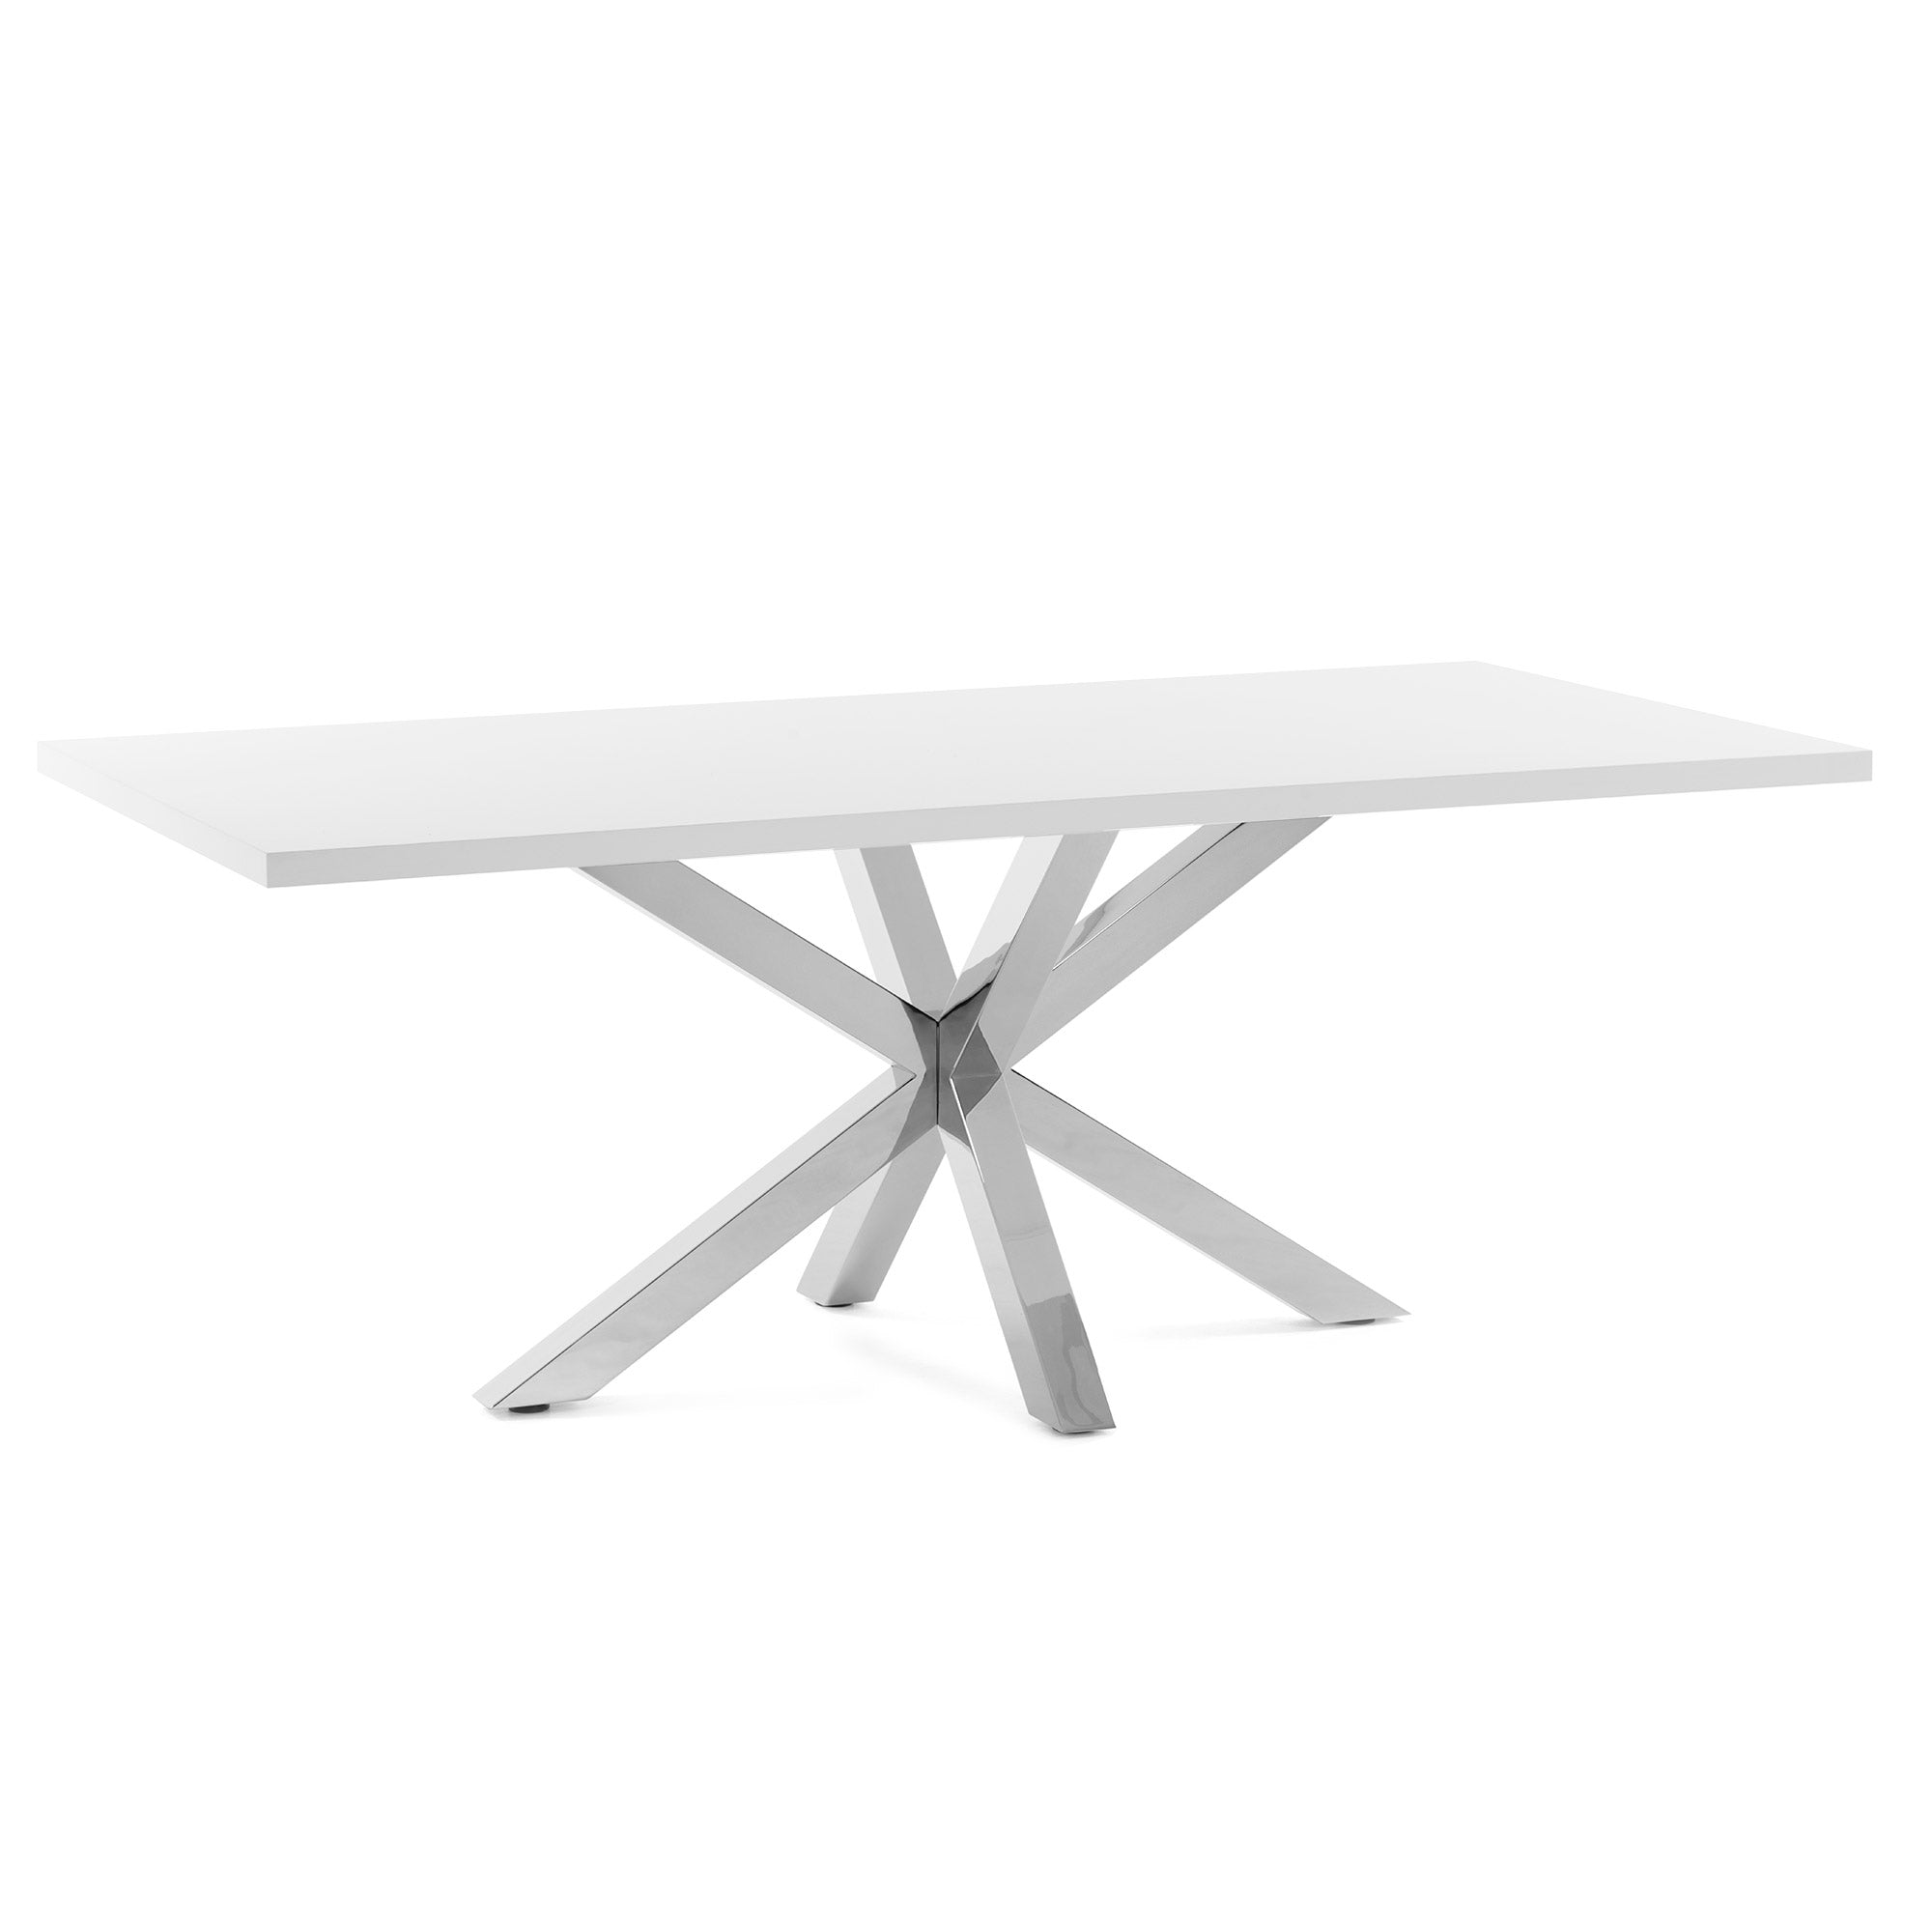 Argo table 180 cm white melamine stainless steel legs